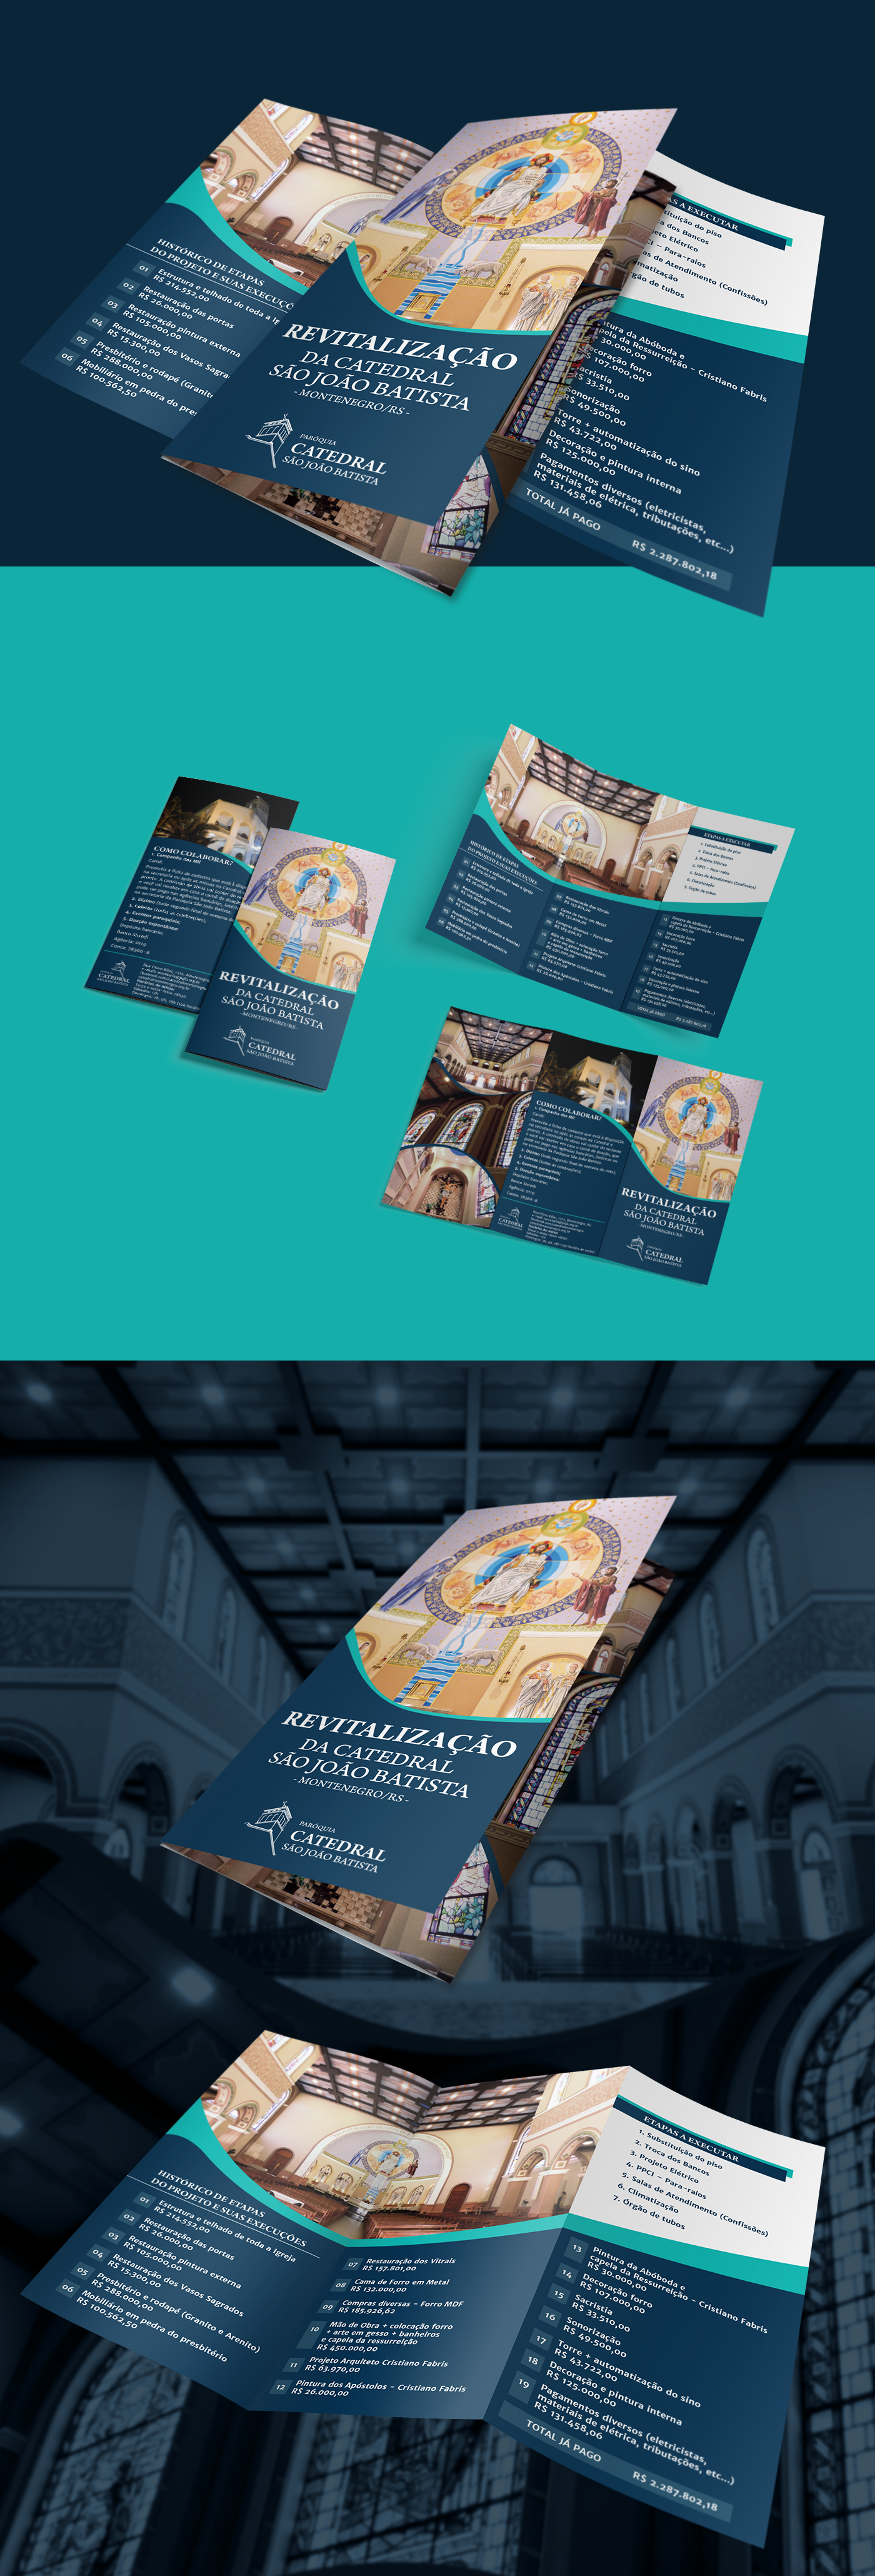 folder campanha revitalização catedral igreja católica cathedral catholic church